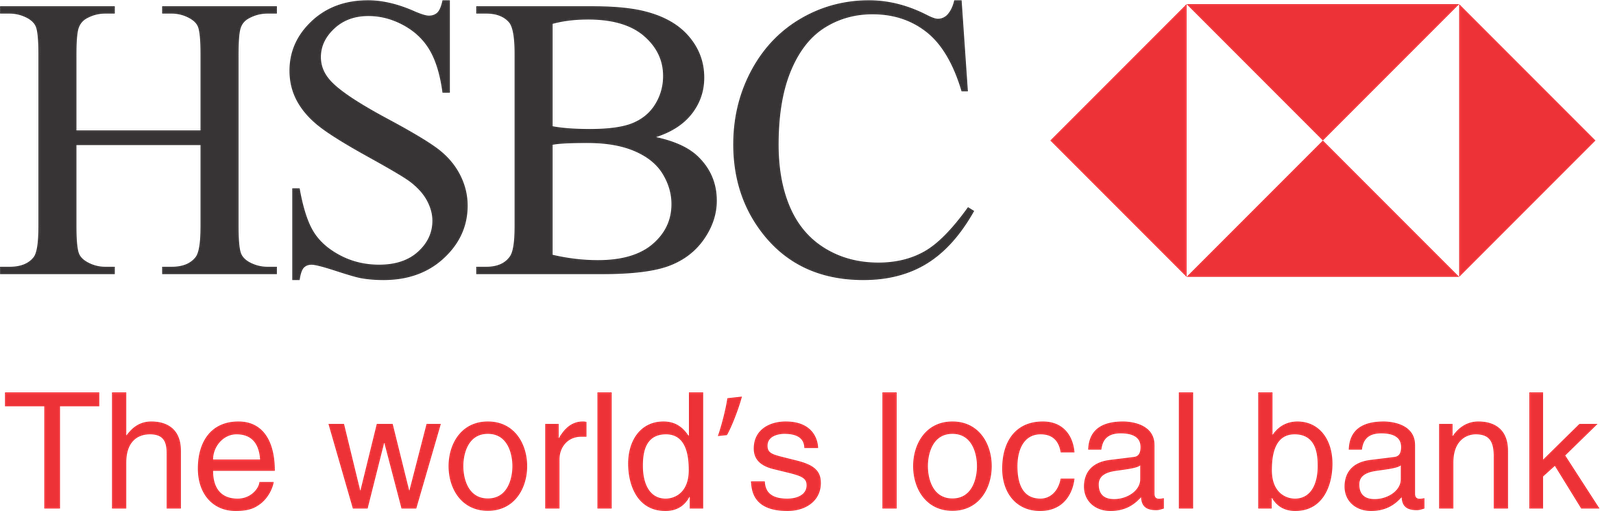 HSBC Logo PNG Transparent Image